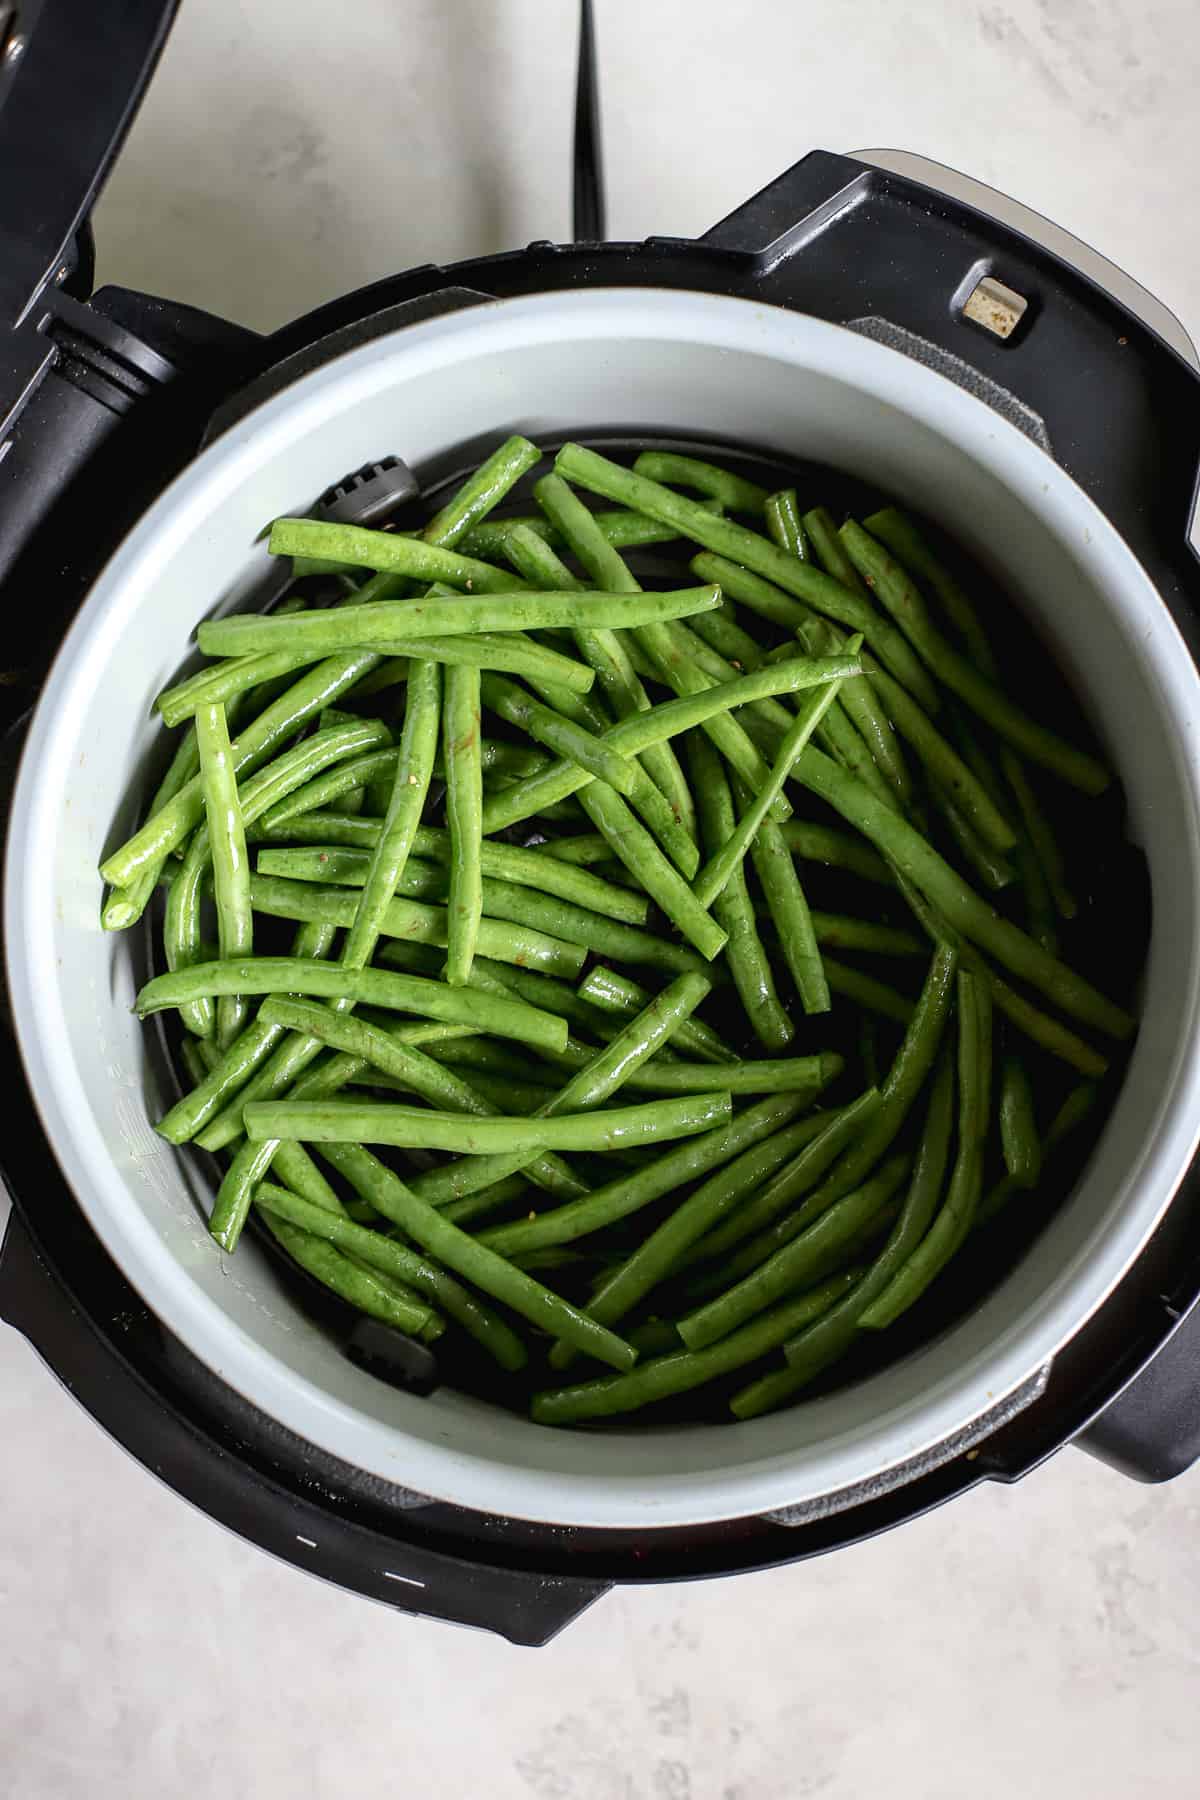 Seasoned green beans in air fryer